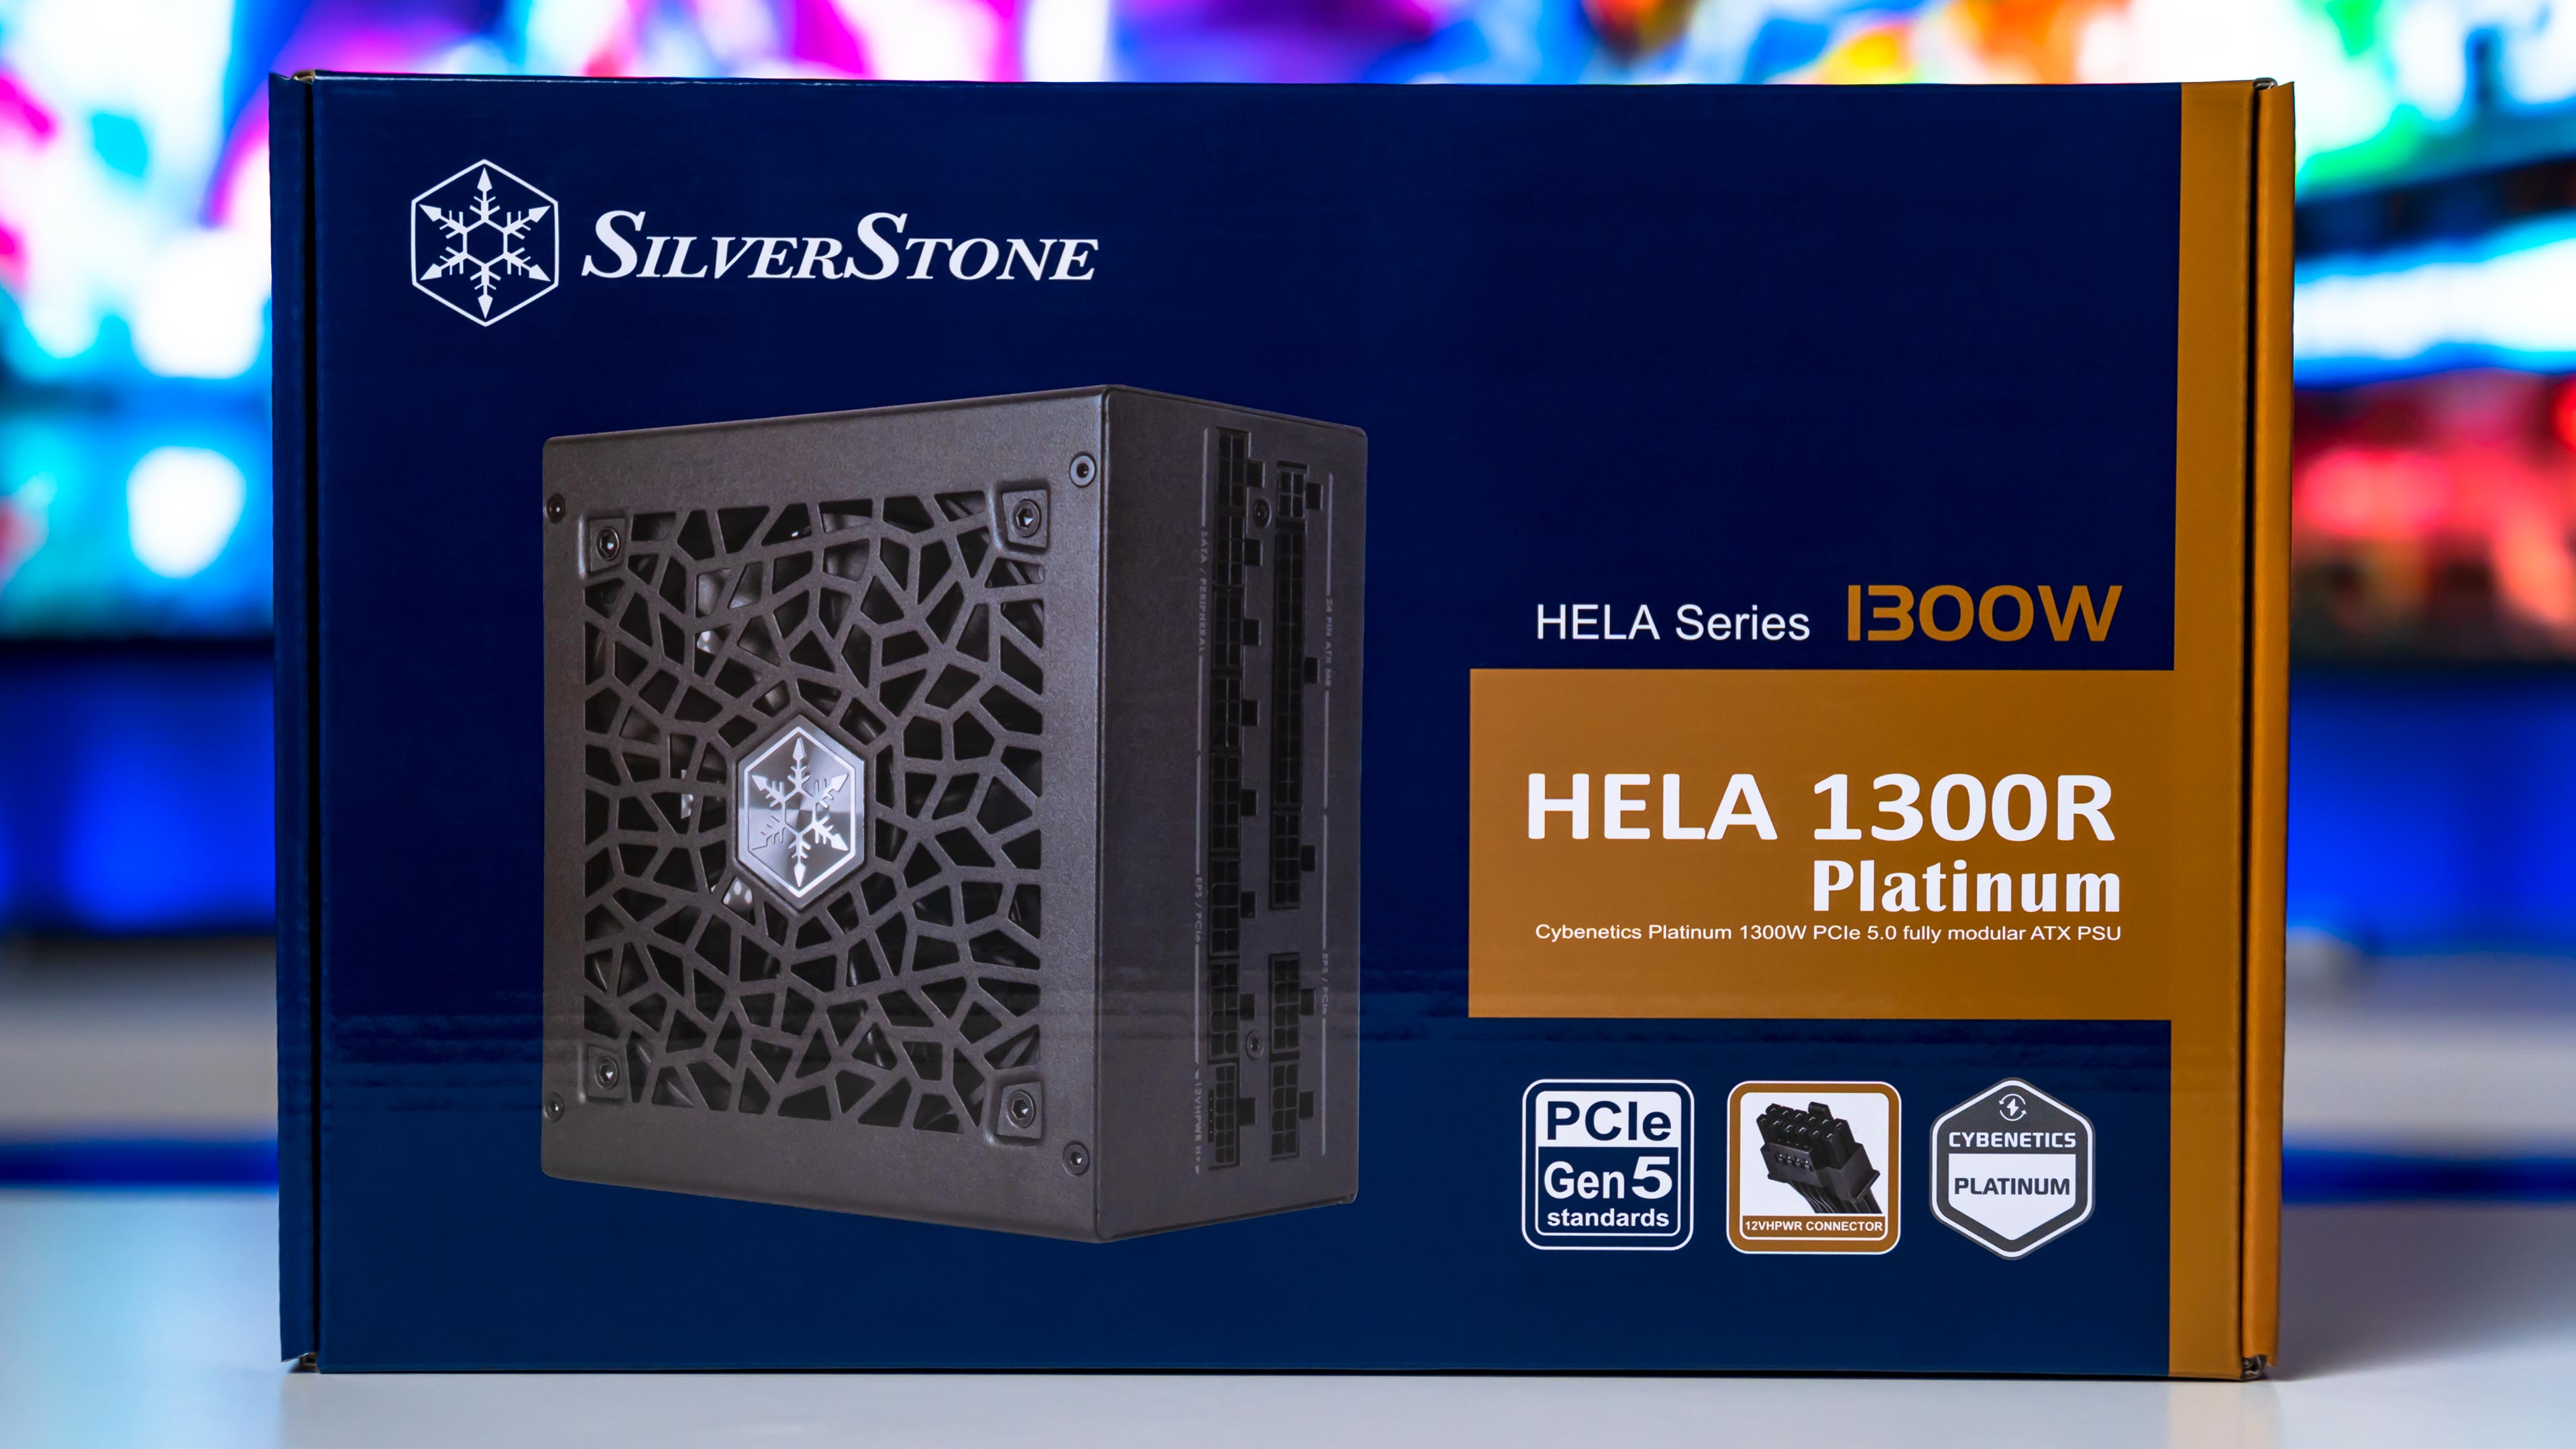 Silverstone HELA 1300R Platinum